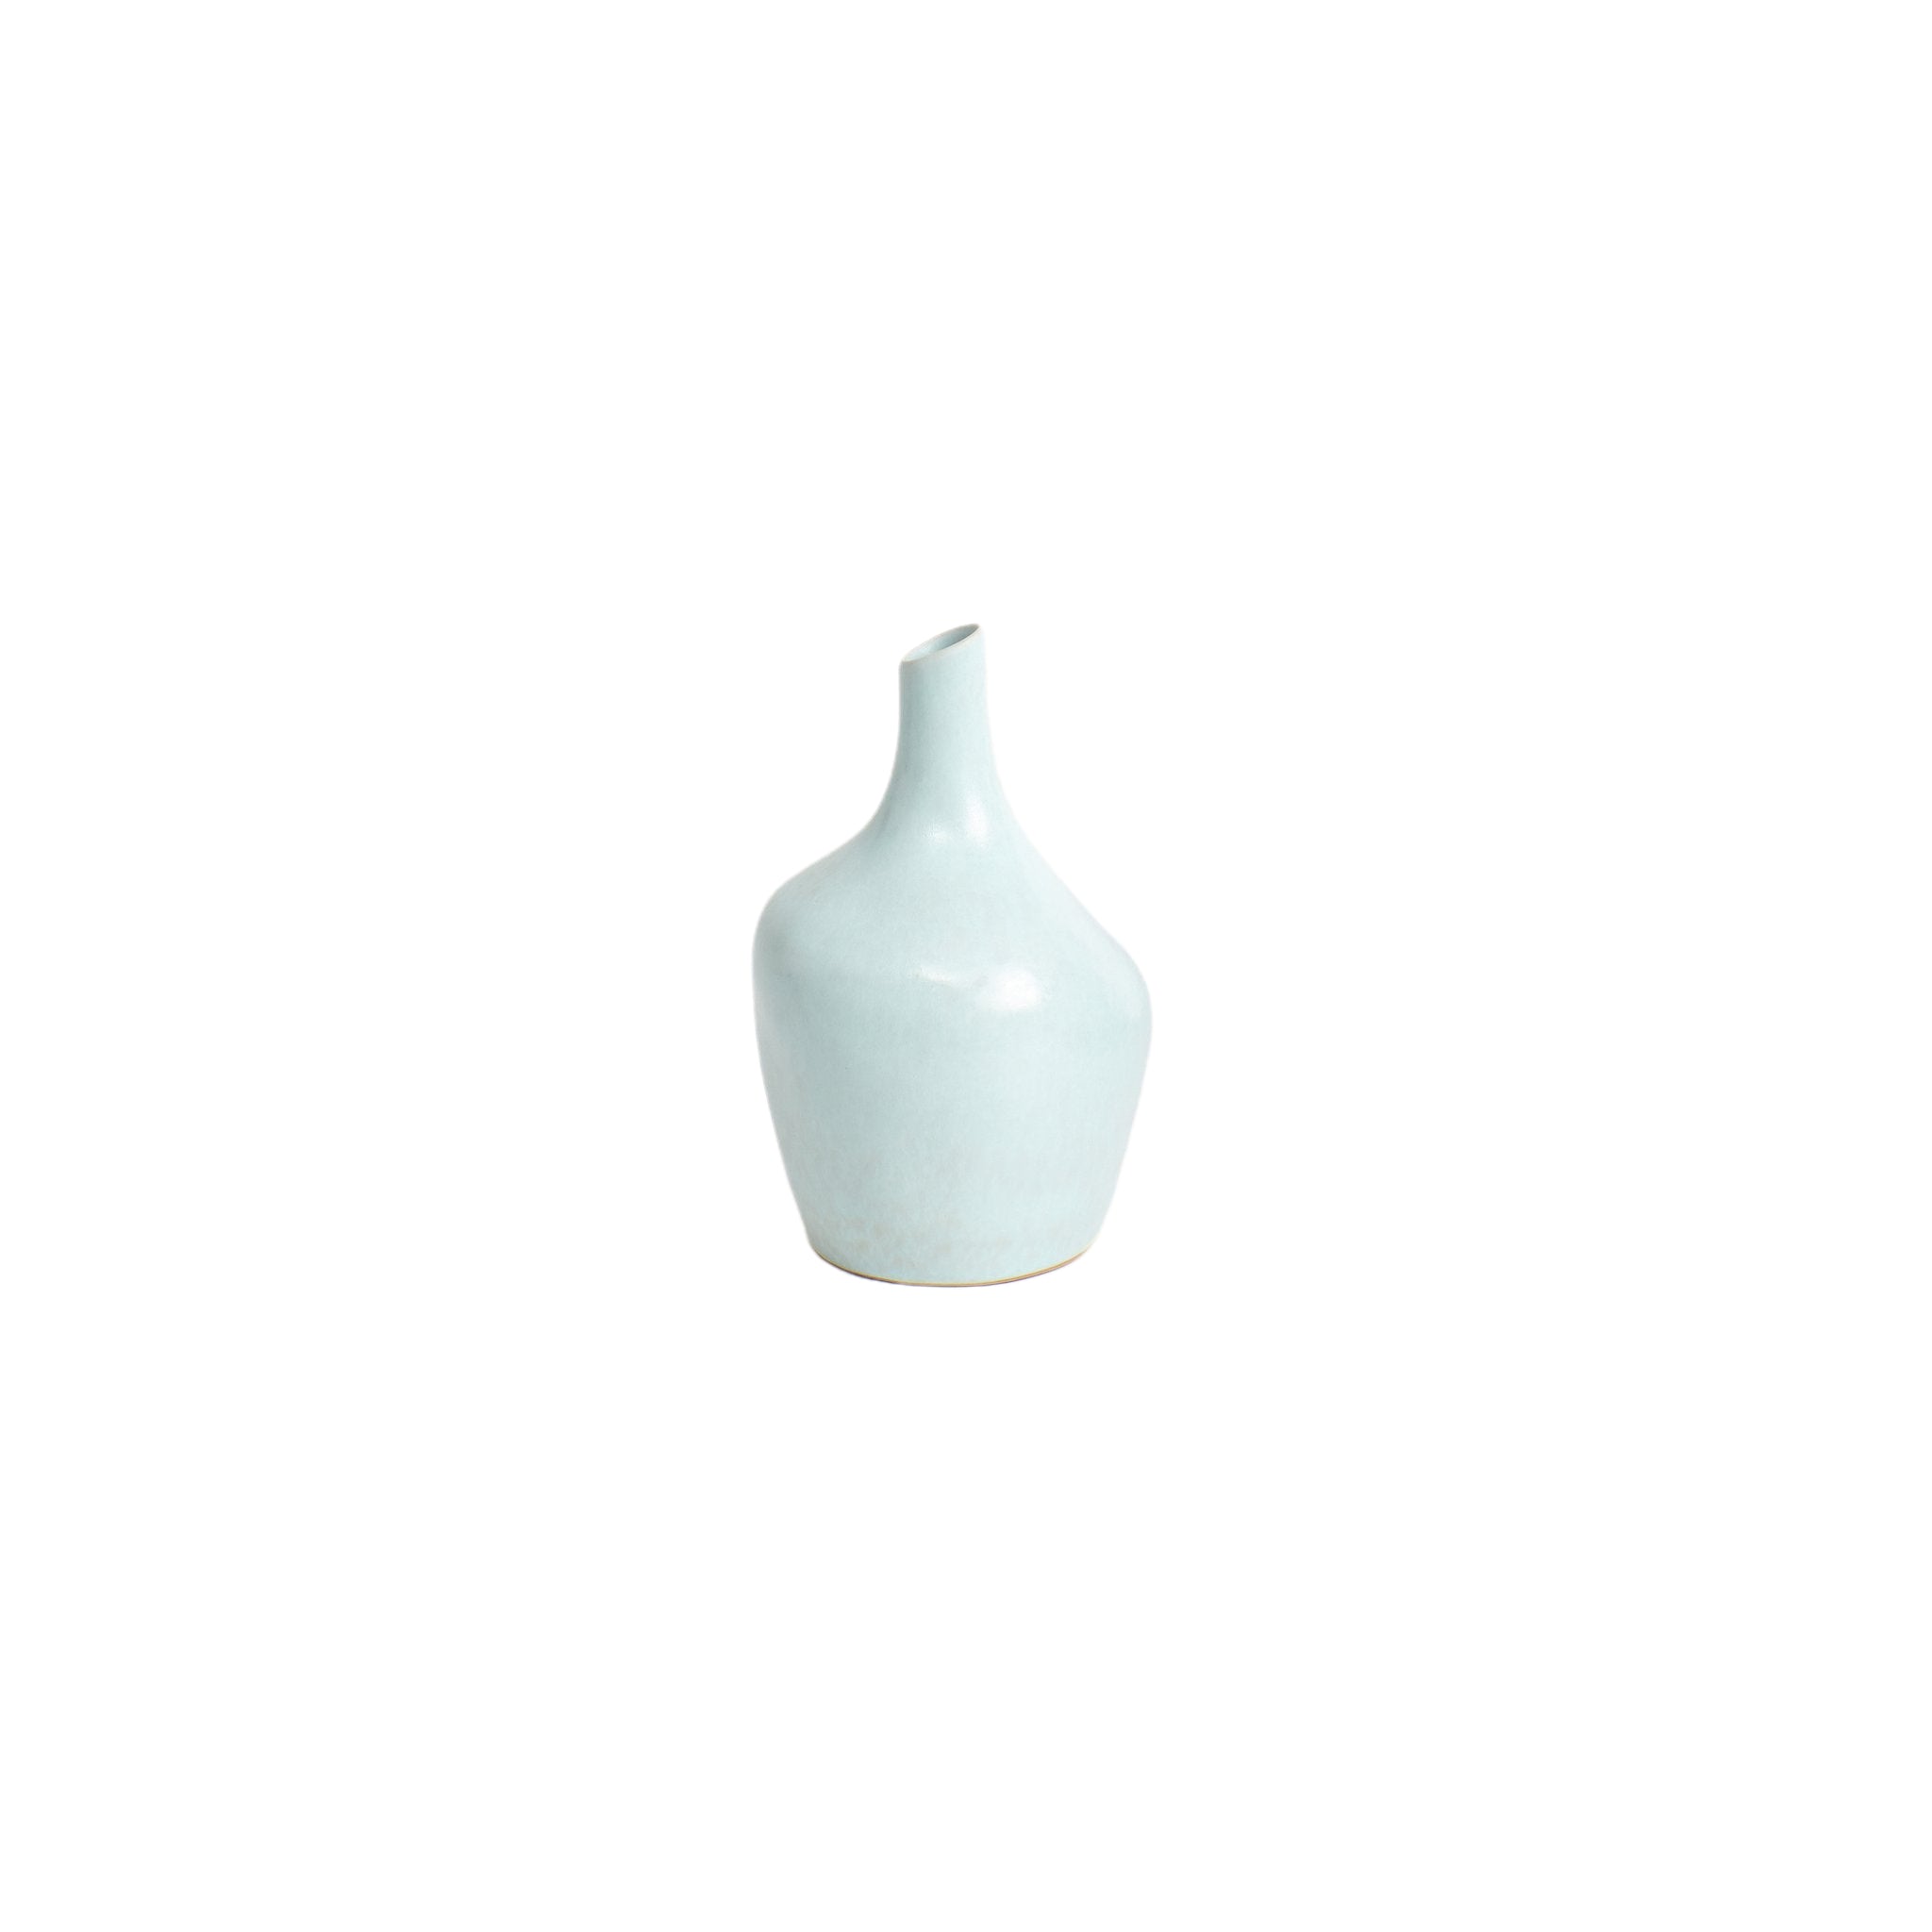 Mini Sailor Vase Vase Project 213A